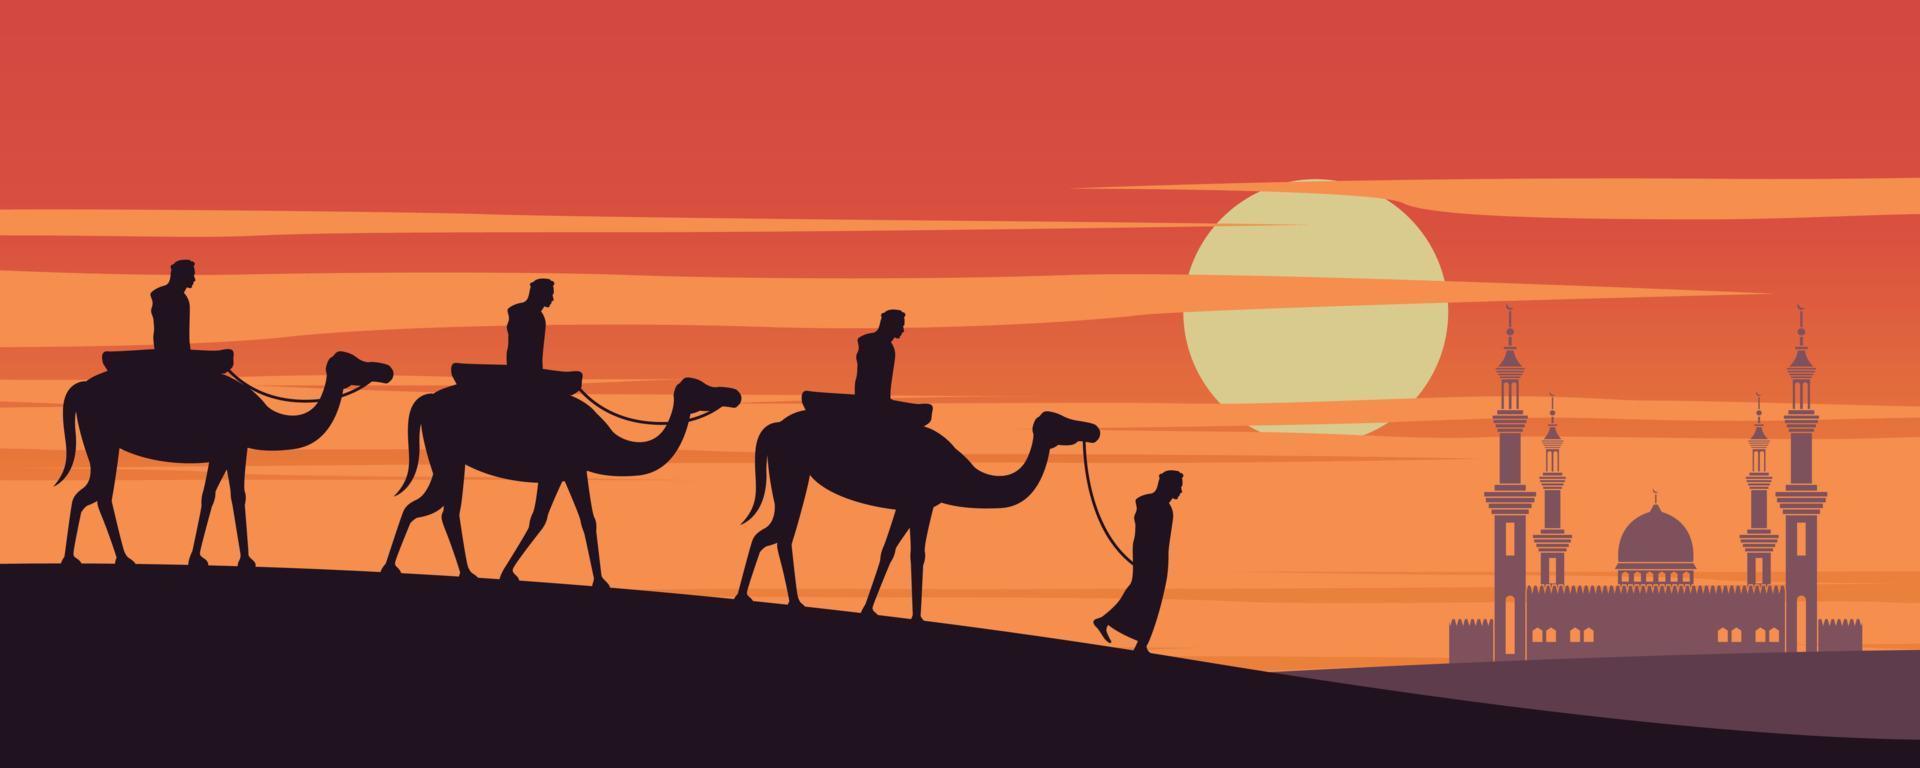 Karawane muslimischer Kamelritt zur Moschee von Dubai bei Sonnenuntergang, die Tradition des arabischen, Silhouettendesigns vektor